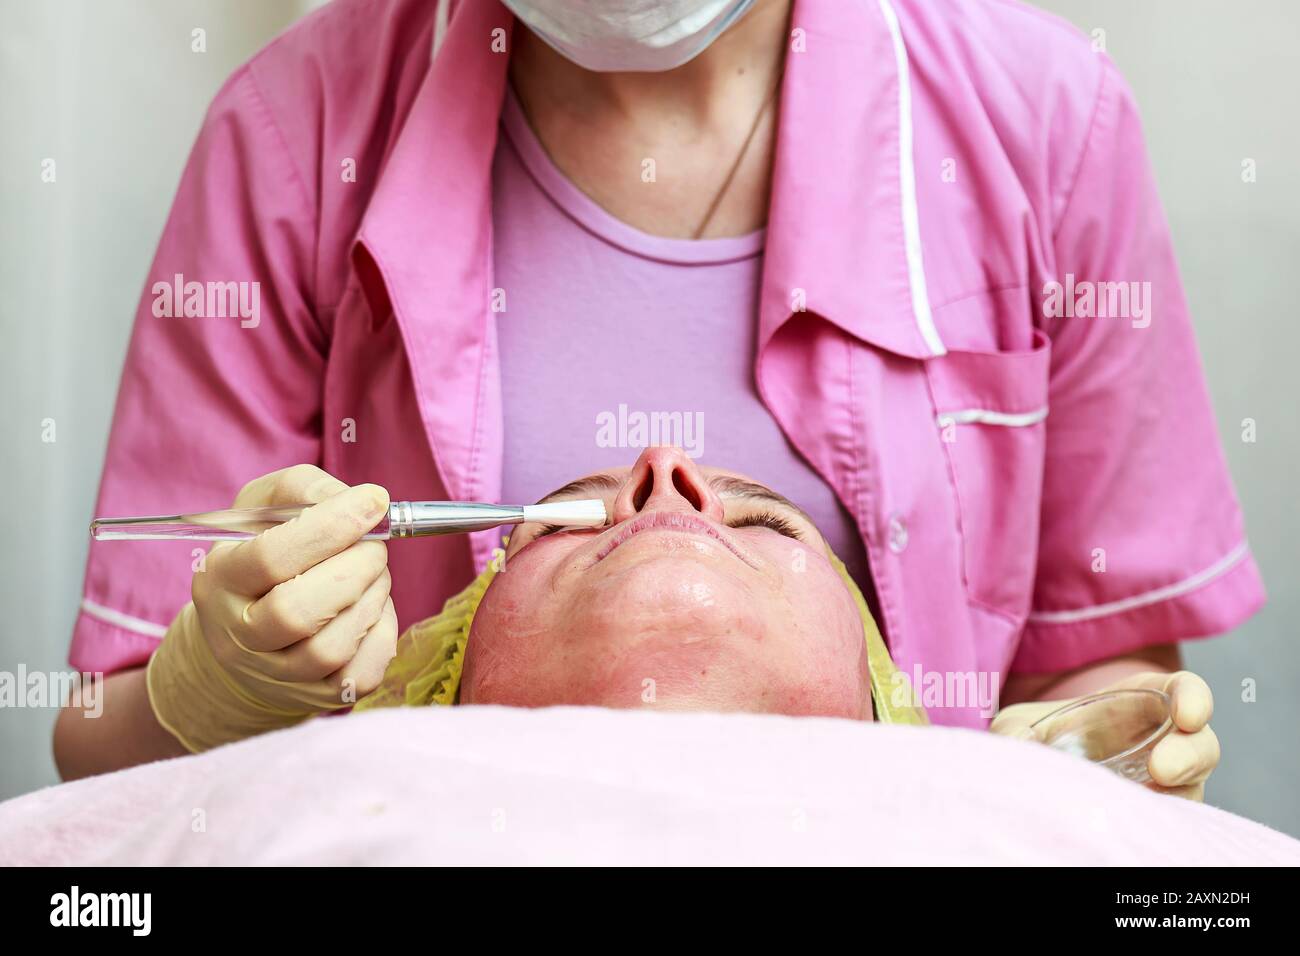 Der Kosmetologe verwendet eine Bürste, um nach dem chemischen Peeling eine beruhigende, transparente Maske auf die gerötete Haut des Gesichts des Patienten aufzutragen. Stockfoto